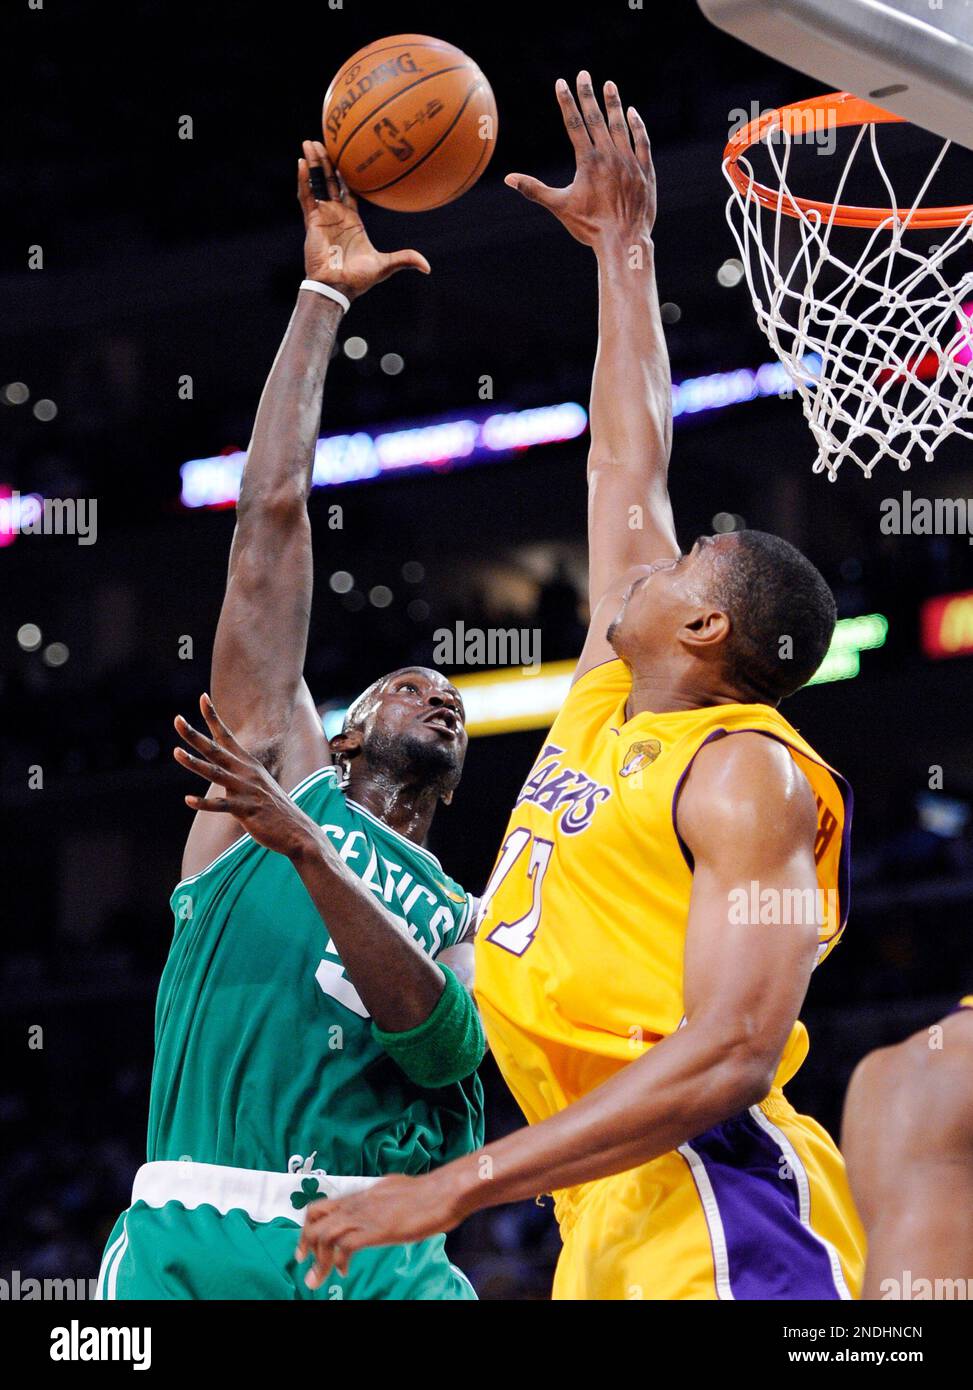 NBA: JUN 17 NBA Finals - Celtics at Lakers - Game 7